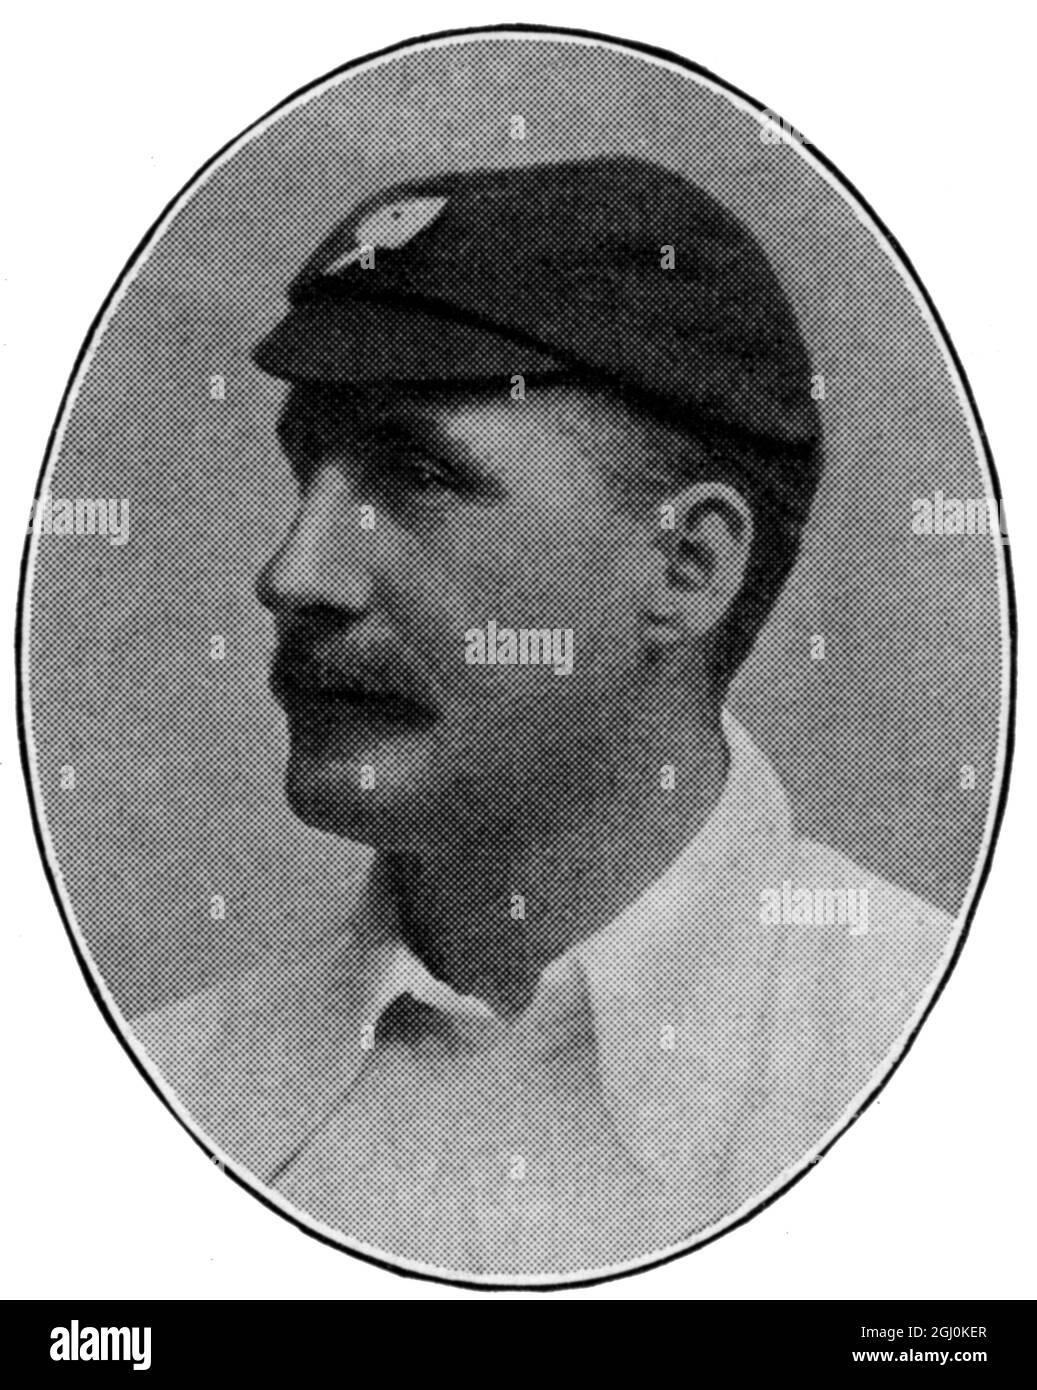 Lord Hawke : joueur de cricket du comté Yorkshire Martin Bladen Hawke, 7e baron Hawke (Gainsborough 16 août 1860 - 10 octobre 1938 à Édimbourg) était un joueur de cricket anglais et administrateur . Il a été capitaine du club de cricket du comté du Yorkshire pendant 28 saisons et a joué dans cinq matchs de test, dont quatre (et les quatre ont tous été gagnés). Banque D'Images